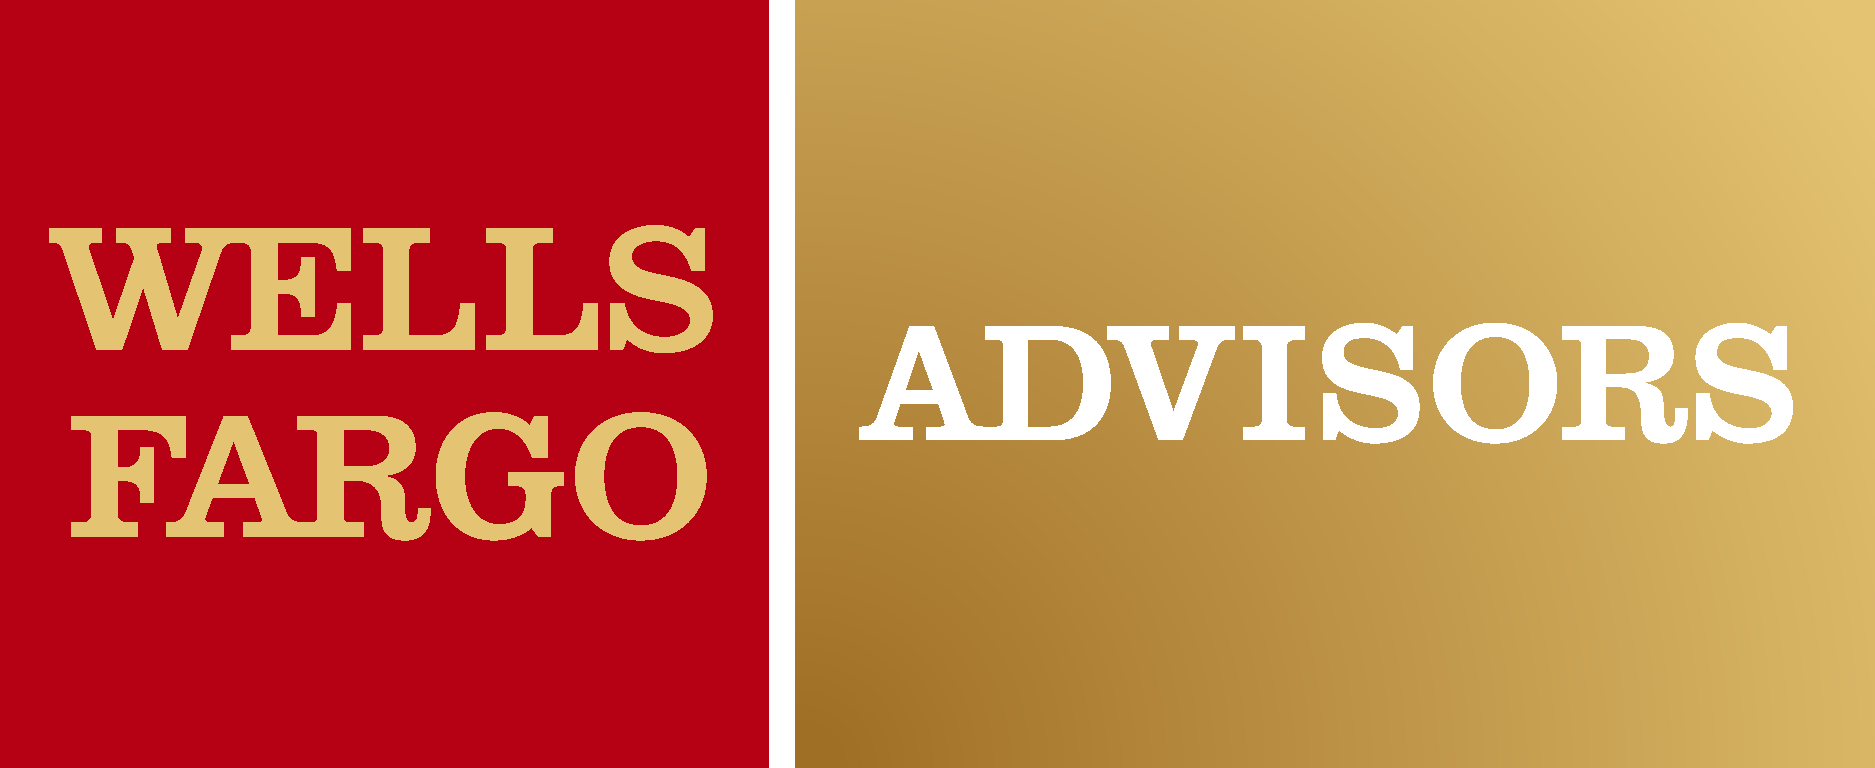 Wells Fargo Advisors Logo Vector